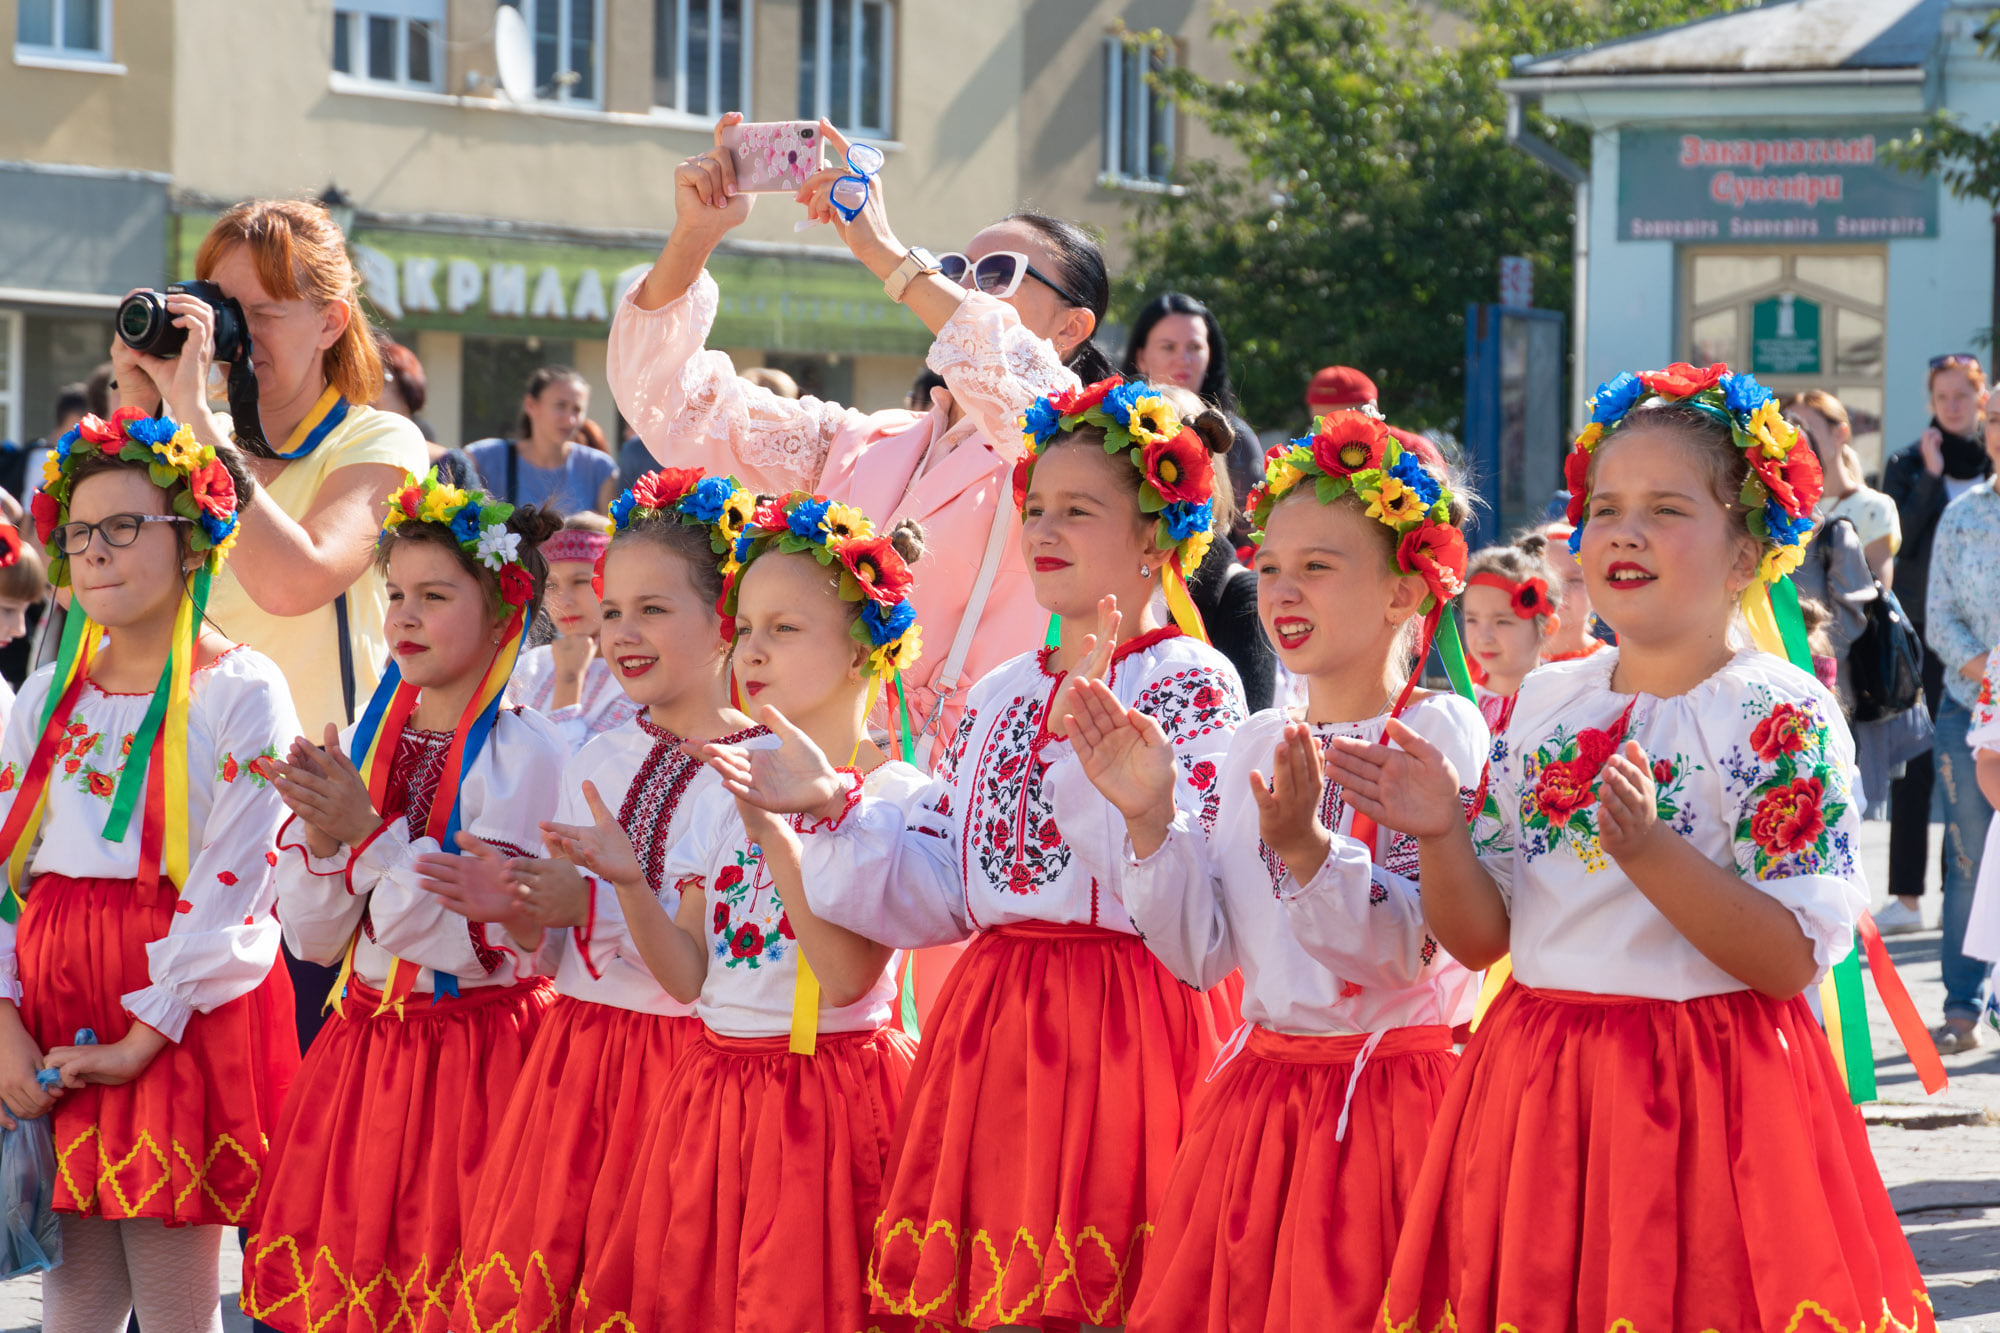 Самые юные ужгородцы первыми поздравили родной город с днем рождения праздничным концертом на Театральной площади.